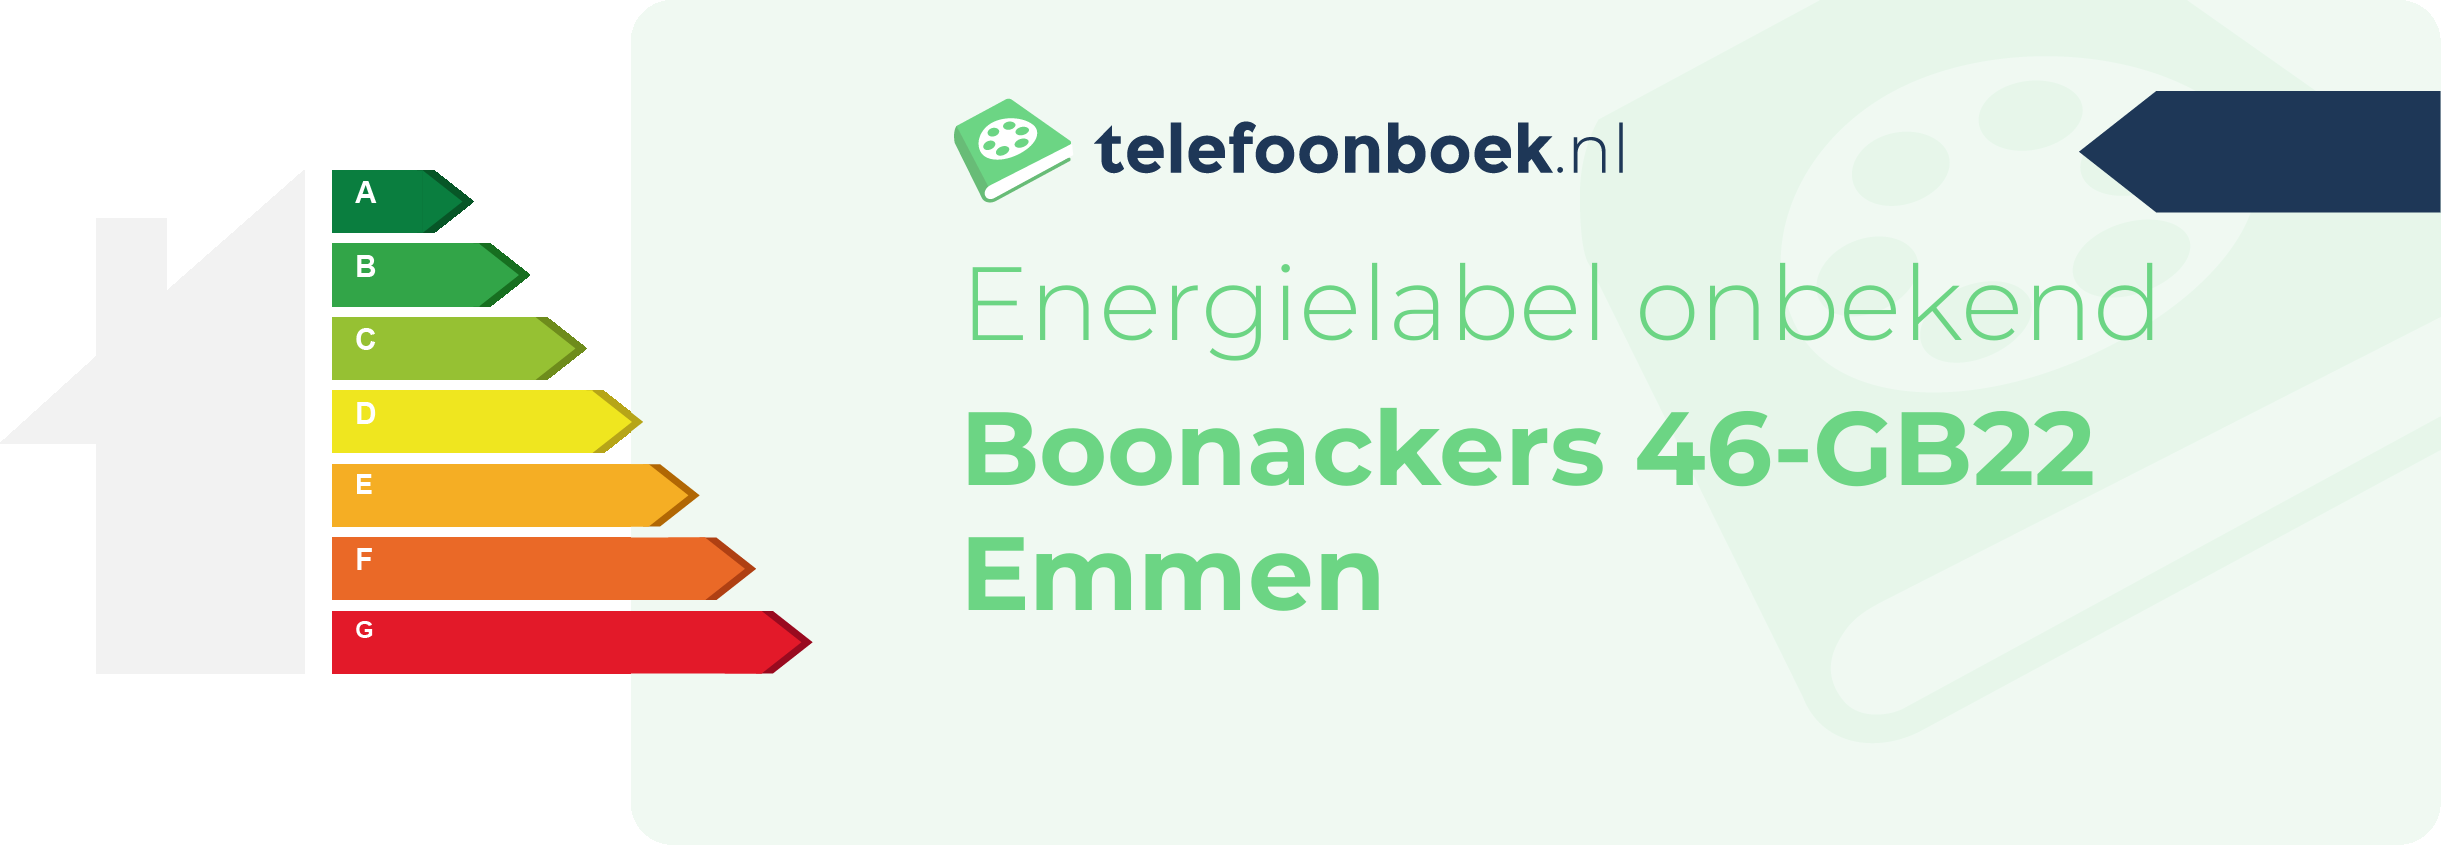 Energielabel Boonackers 46-GB22 Emmen